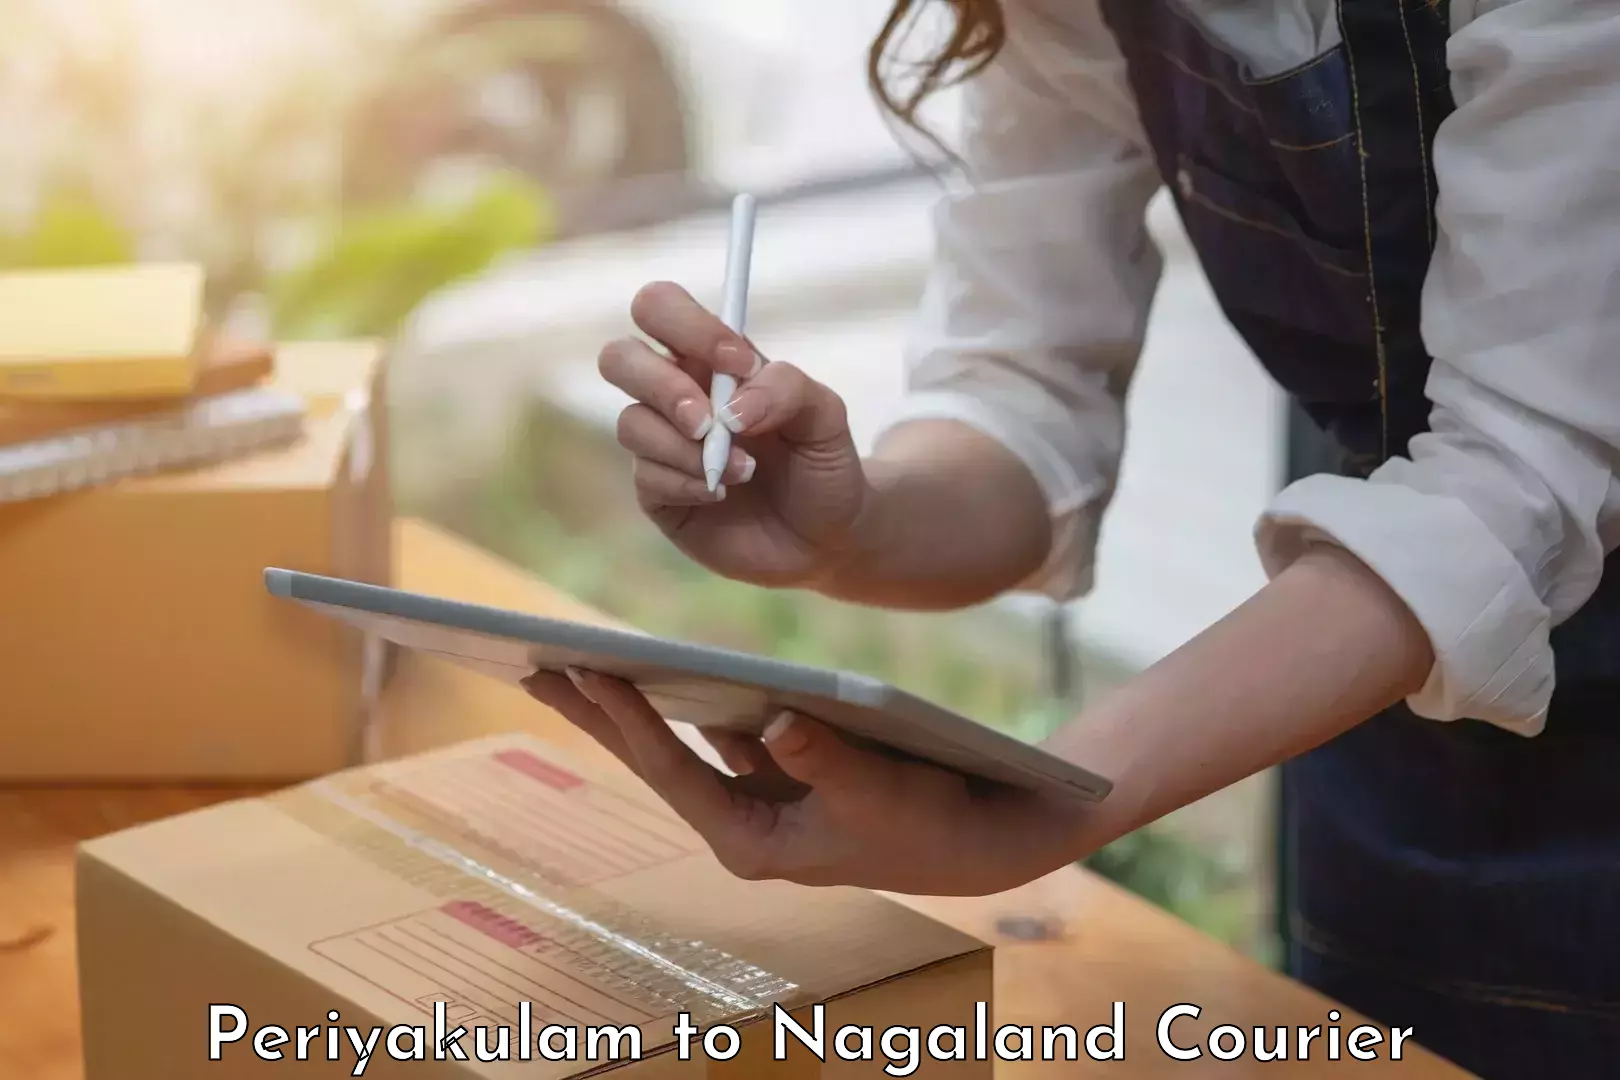 Professional moving company Periyakulam to NIT Nagaland